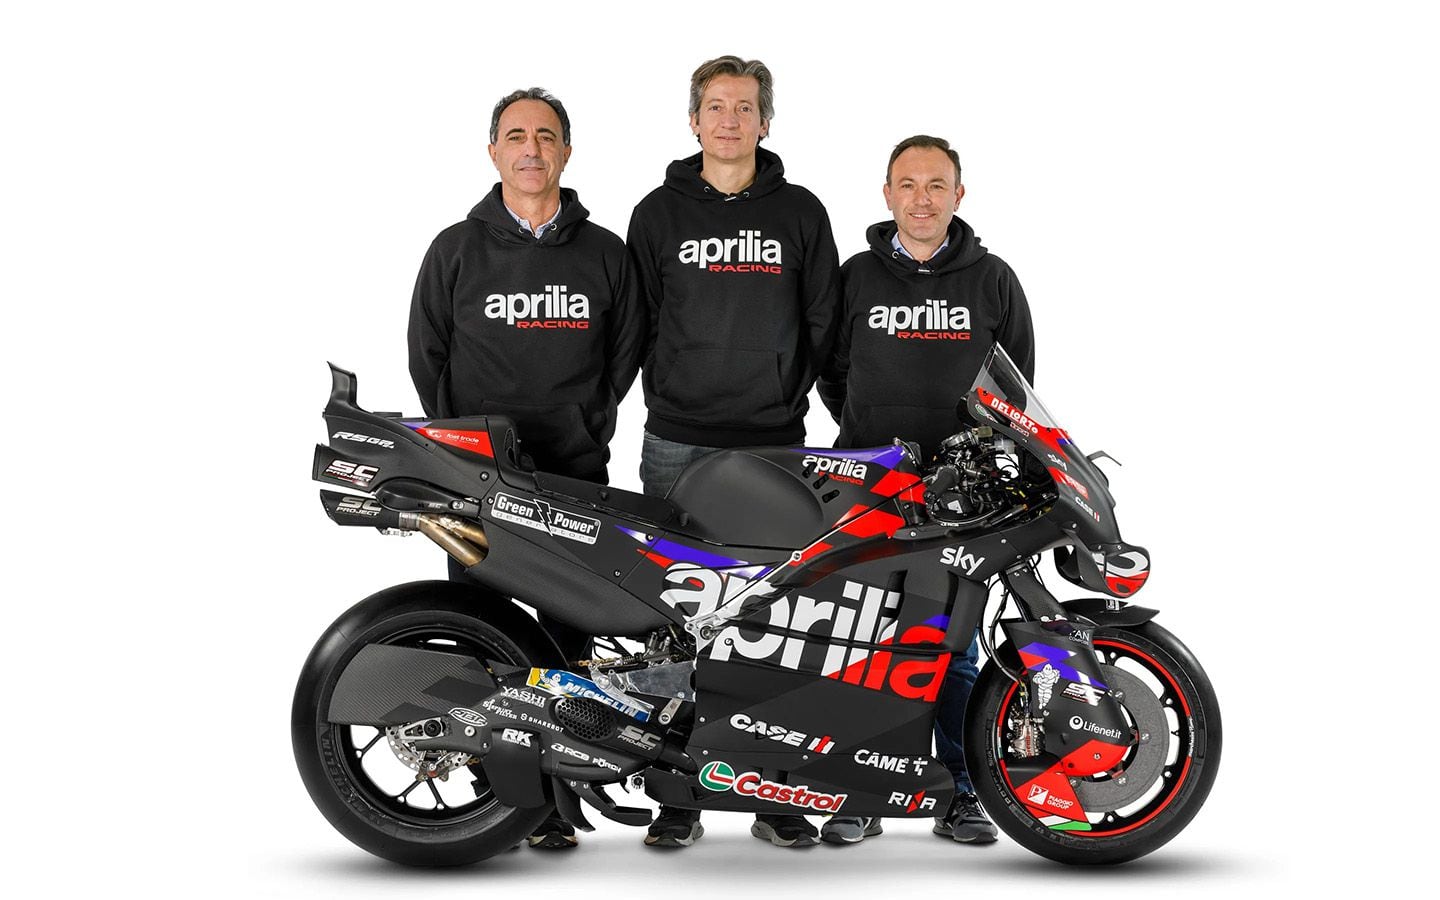 Left to right: Romano Albesiano, Massimo Rivola, and Paolo Bonora with the Aprilia RS-GP24.